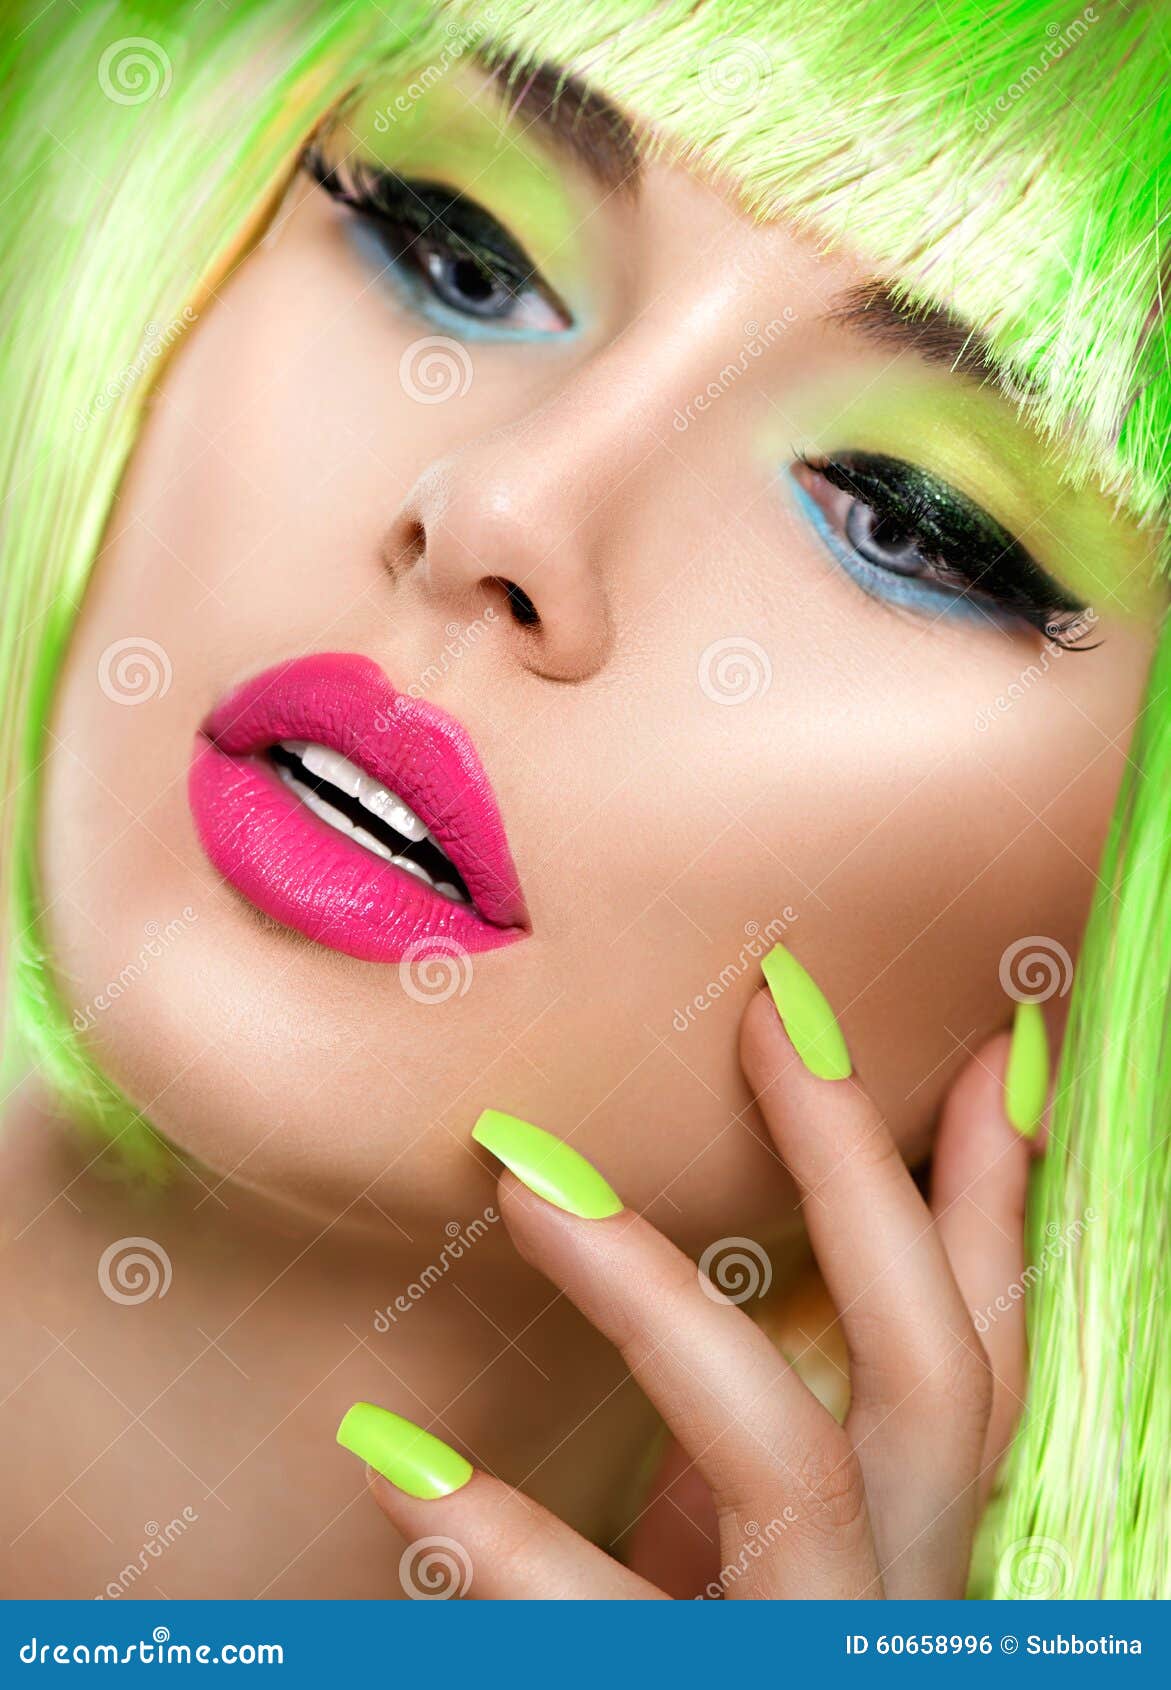 beauty girl with vivid makeup and bright green nailpolish